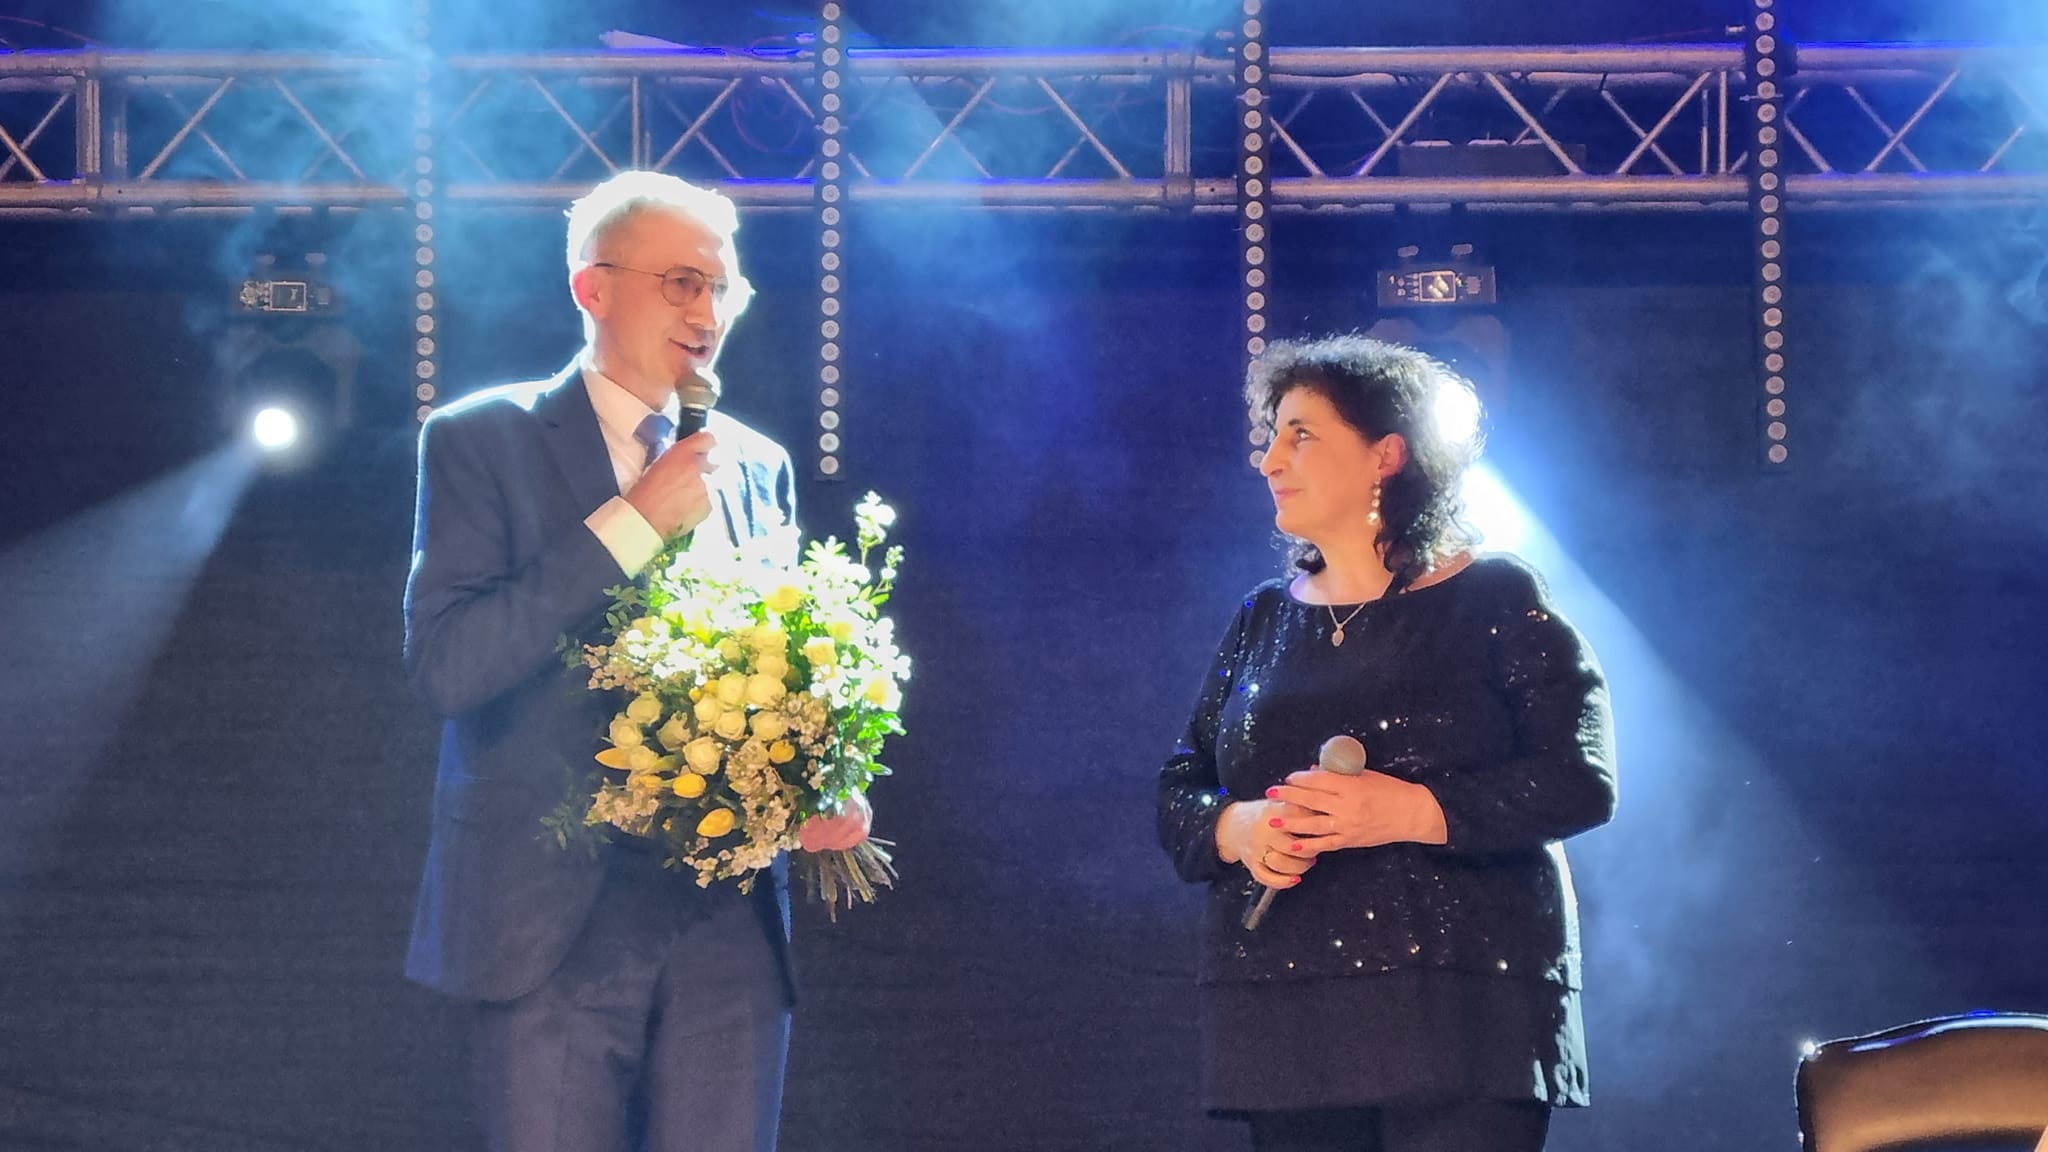 Burmistrz Miasta i Gminy Pleszew wręczajacy bukiet kwiatów Eleni występującej w Pleszewie z okazji Dnia Kobiet